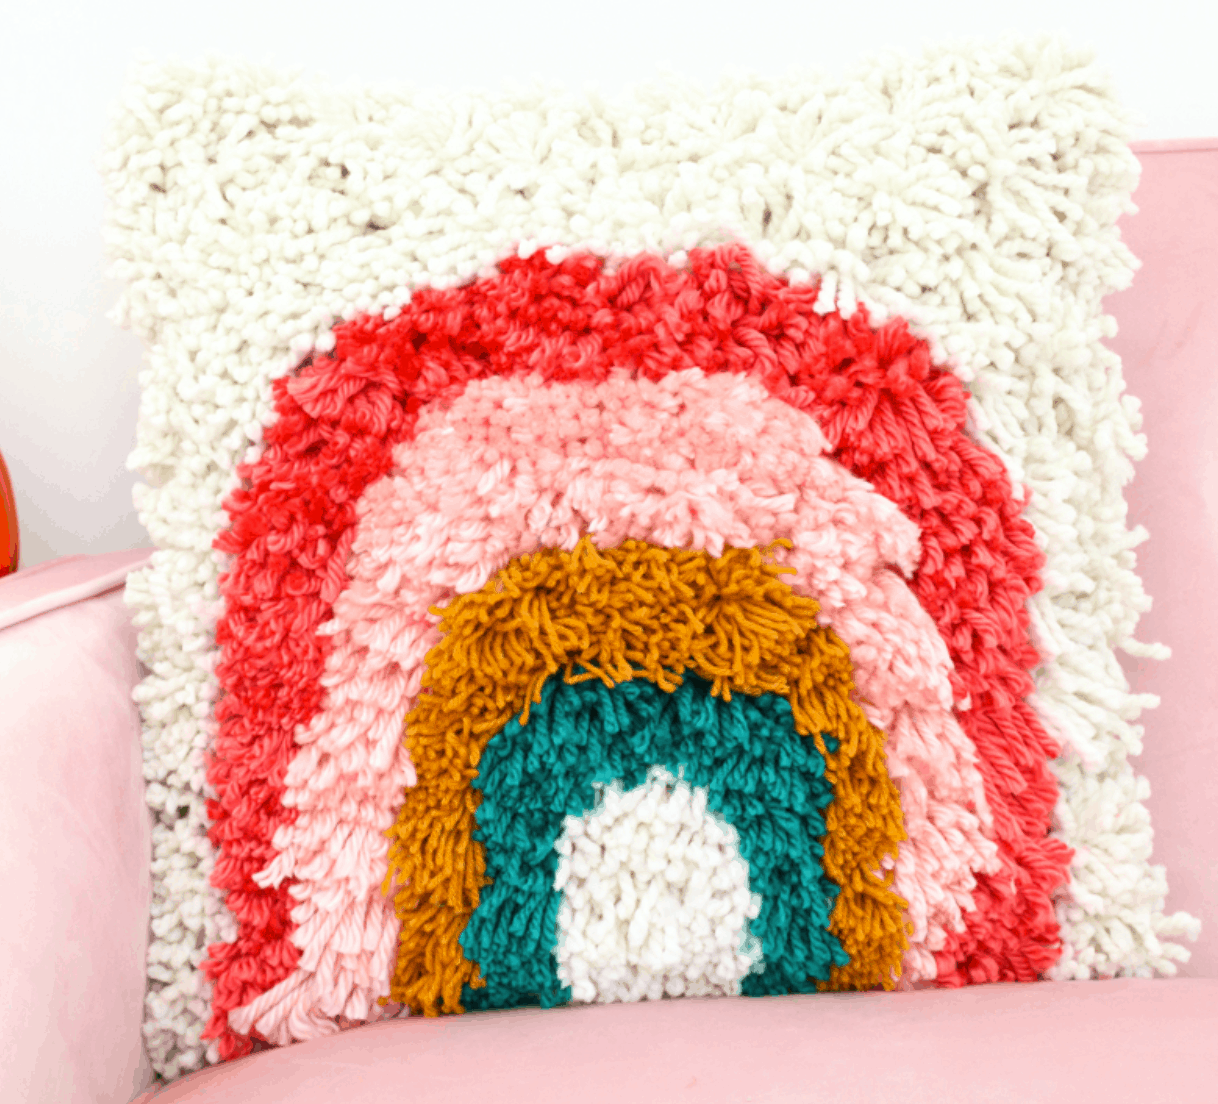 DIY It - A Cozy Pom Pom Pillow - A Kailo Chic Life